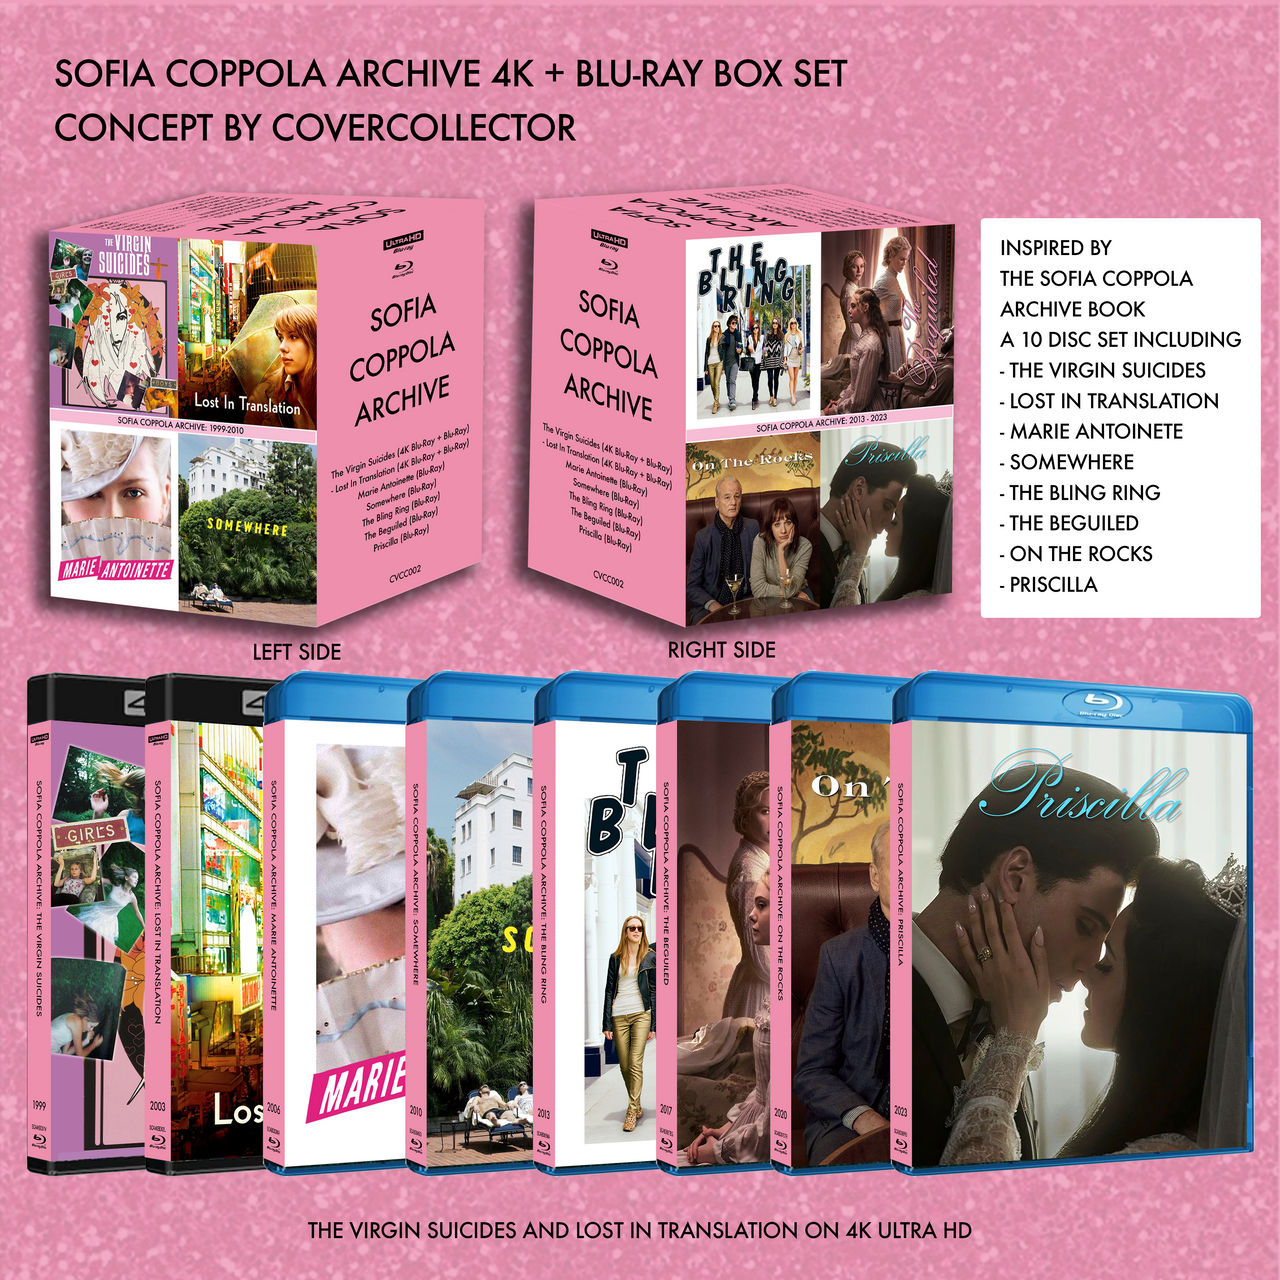 Sofia Coppola on Her Book 'Sofia Coppola Archive' and 'Priscilla